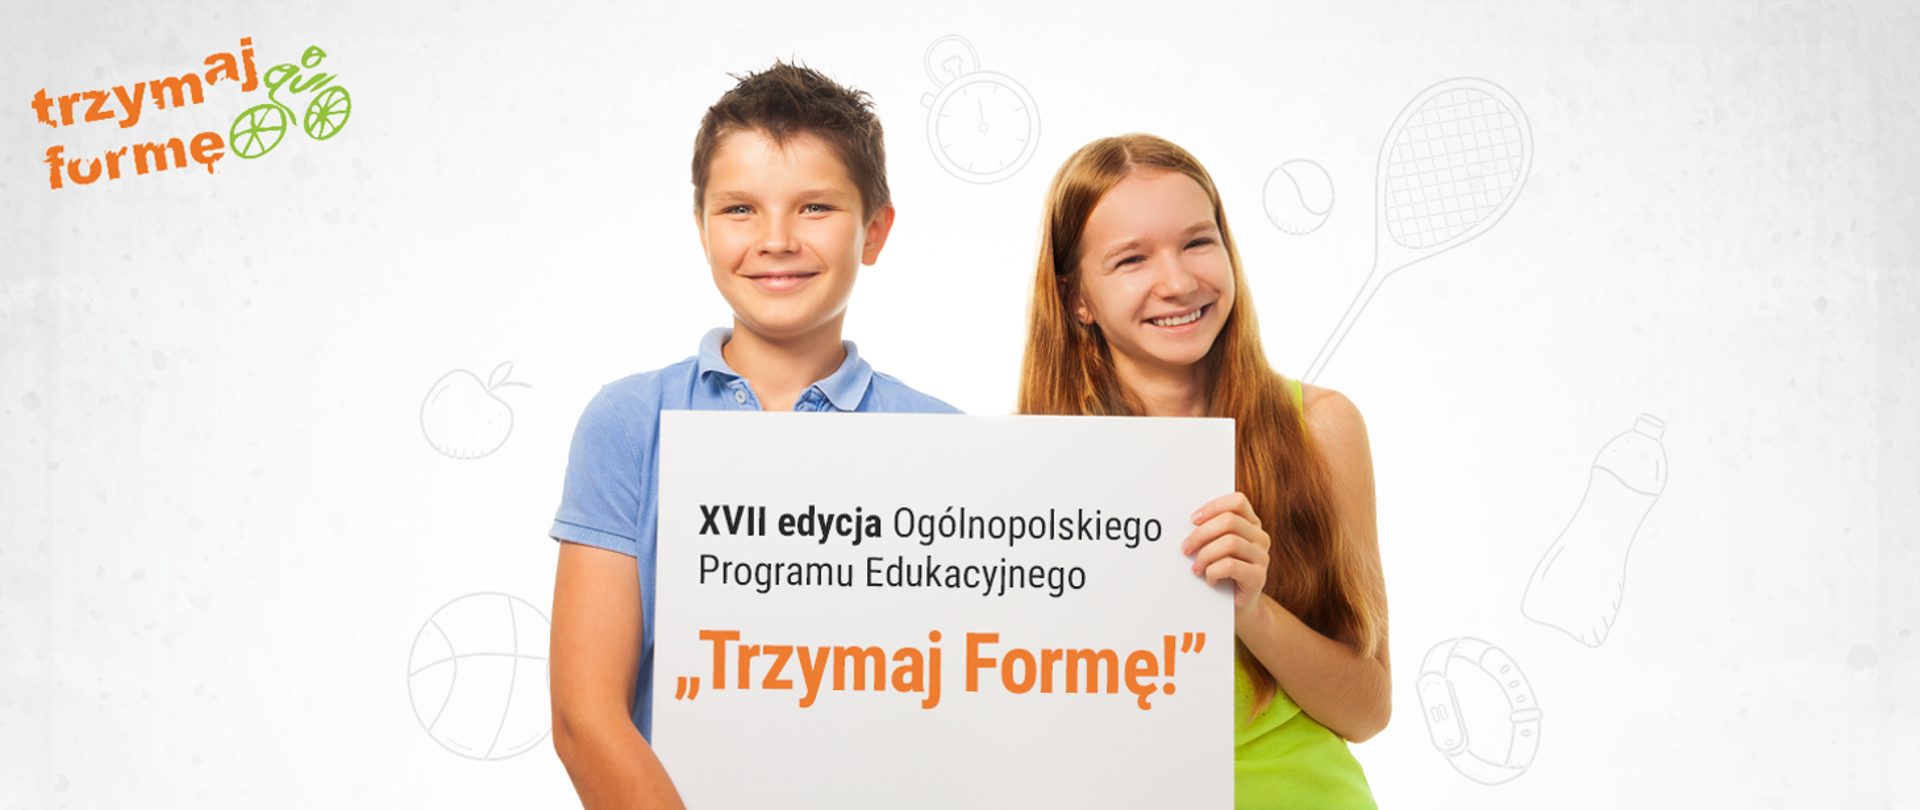 Zdjęcie przedstawia w lewym górnym rogu napis trzymaj formę oraz grafikę przestawiającą rower. Na środku na zdjęciu znajduje się chłopiec i dziewczynka, którzy trzymają planszę z napisem XVII edycja Ogólnopolskiego Programu Edukacyjnego "Trzymaj formę!"